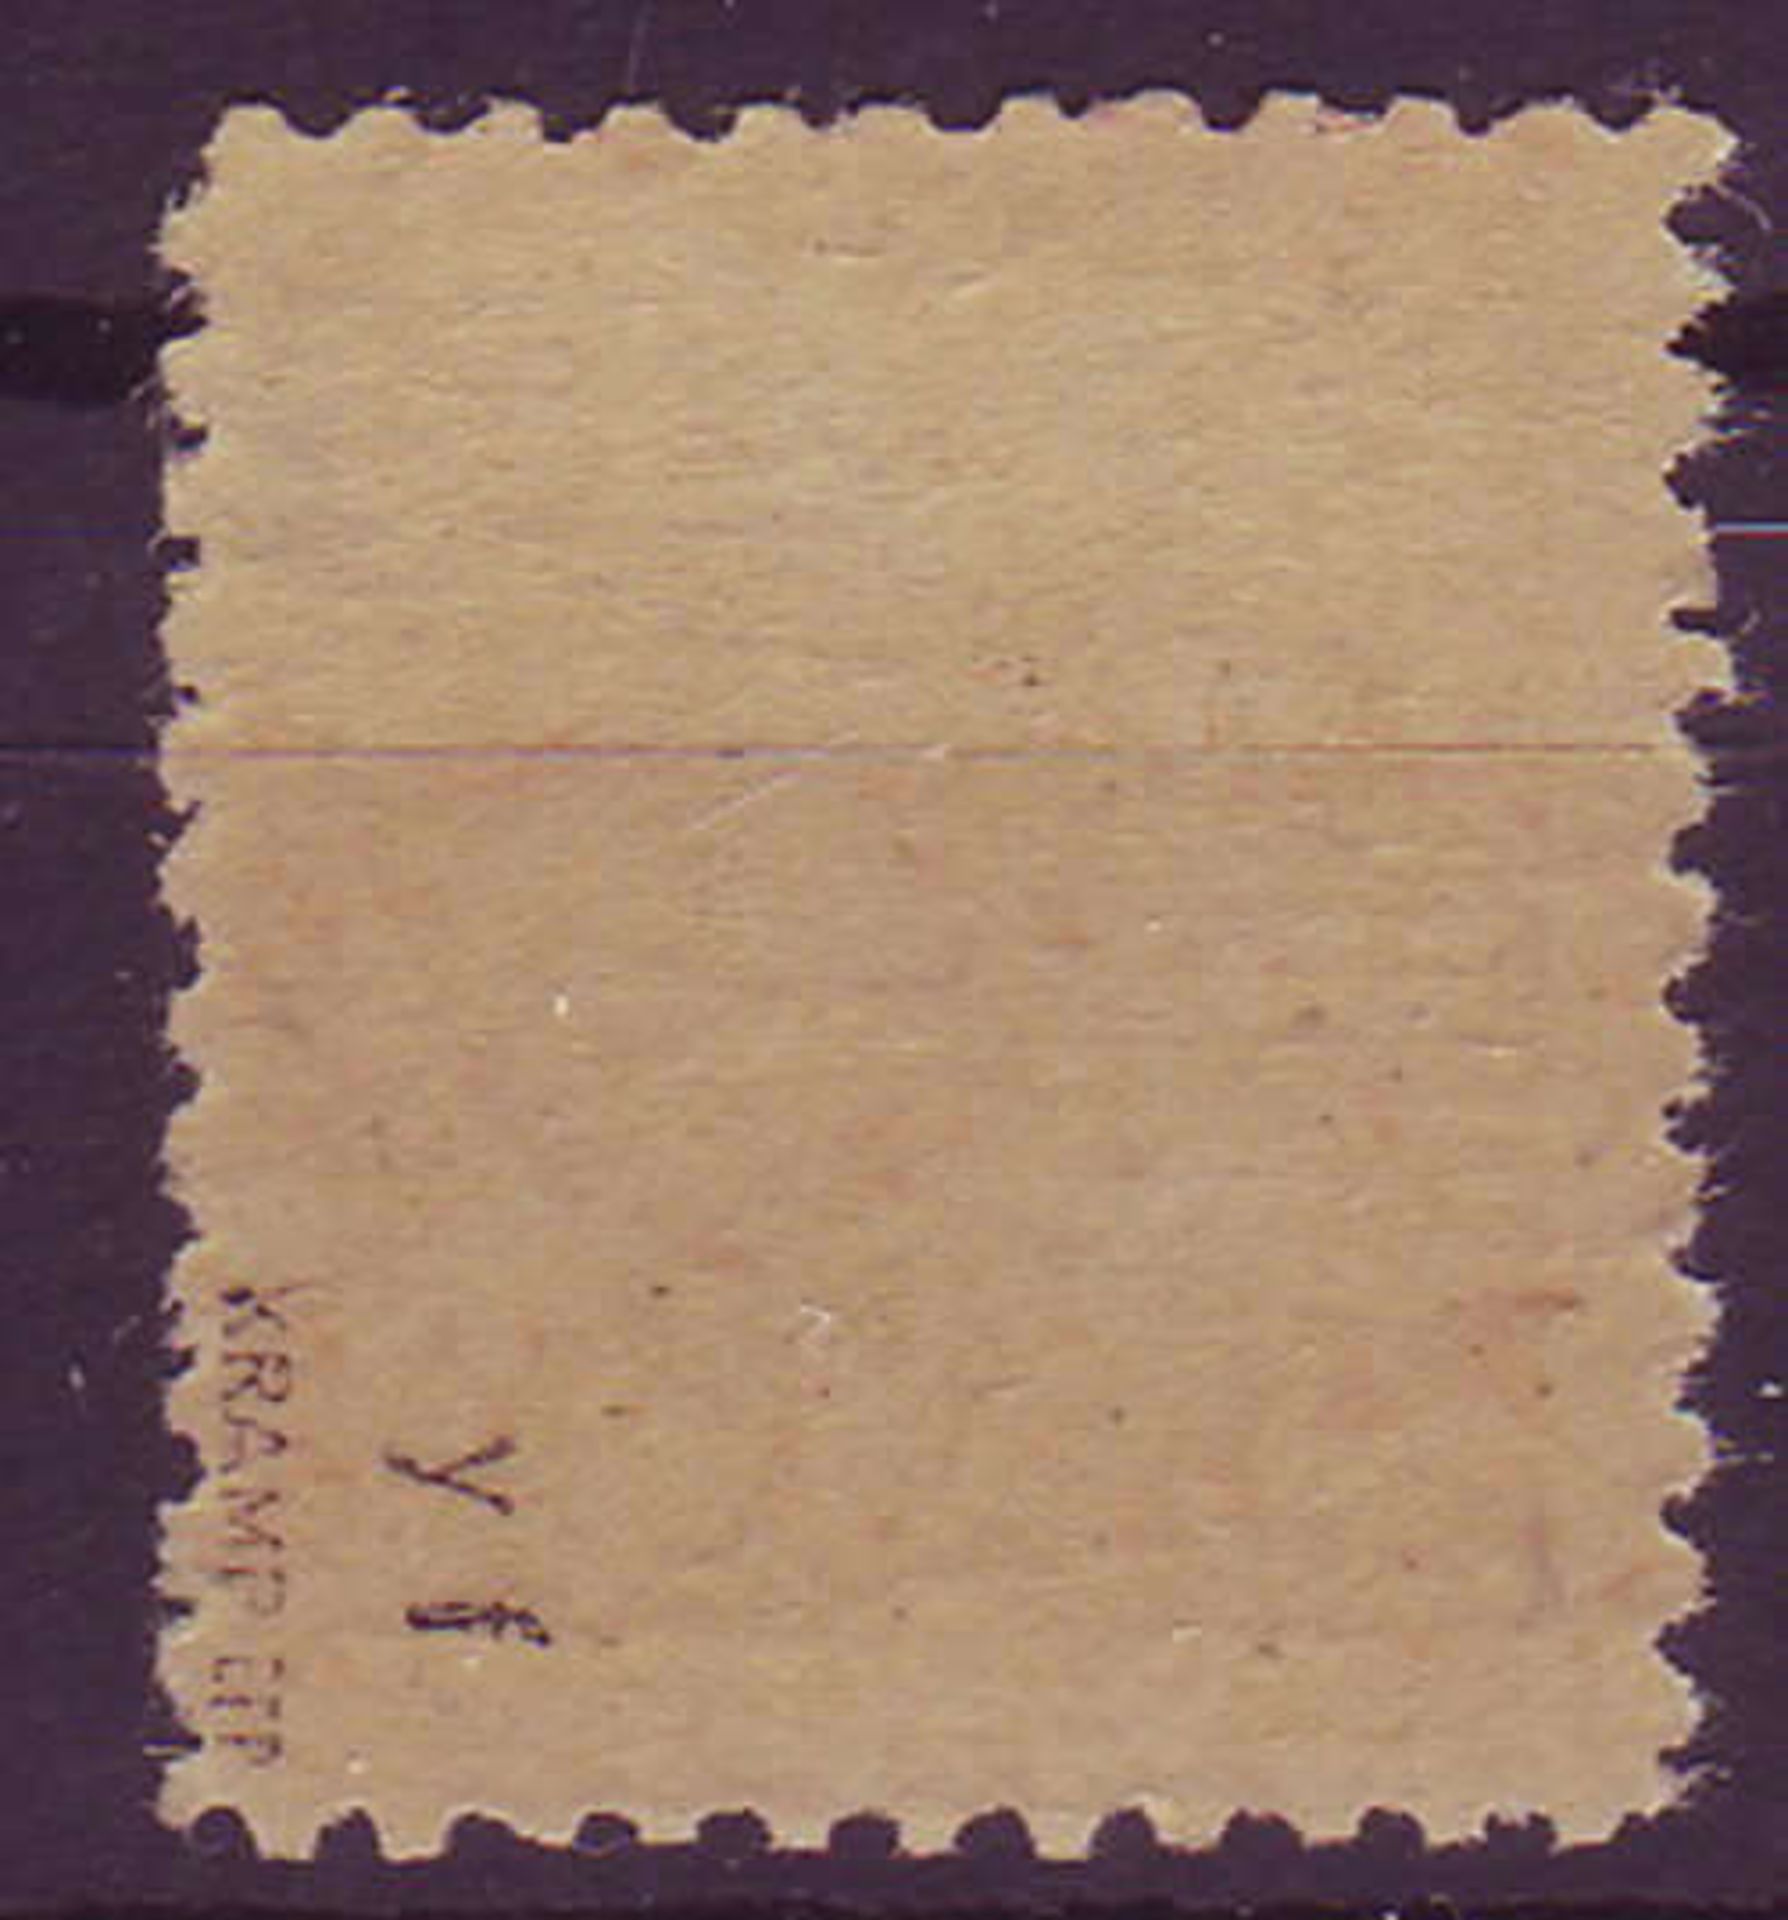 SBZ Mecklenburg-Vorpommern 1946, Mi. - Nr. 36y b, bu, e, f, g. meist geprüft Kramp. Postfrisch.SBZ - Bild 2 aus 2